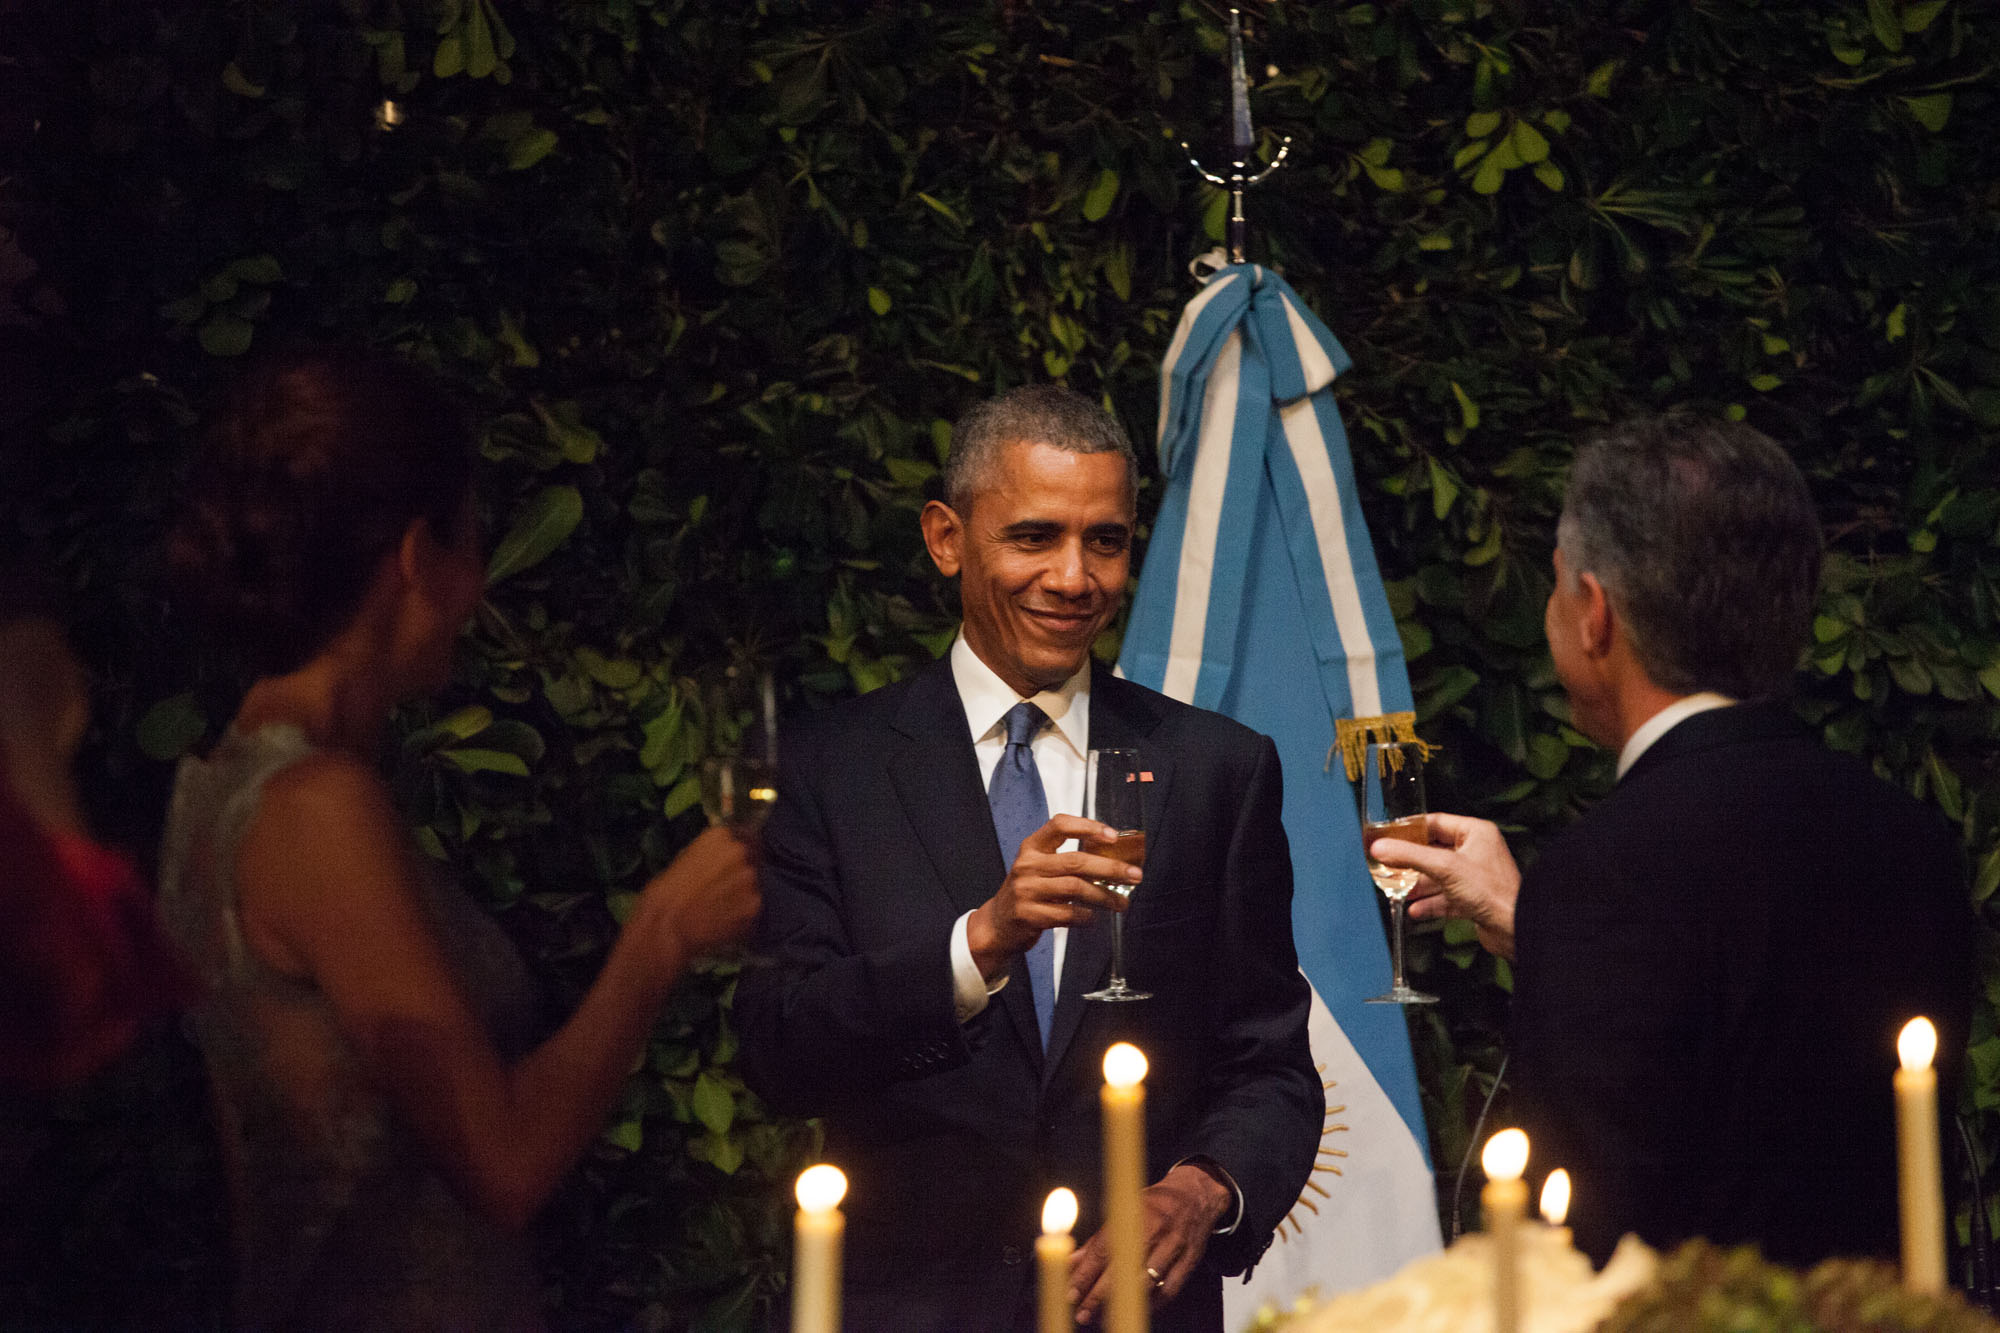 Barack Obama, Juliana Awada y Mauricio Macri en la cena de honor